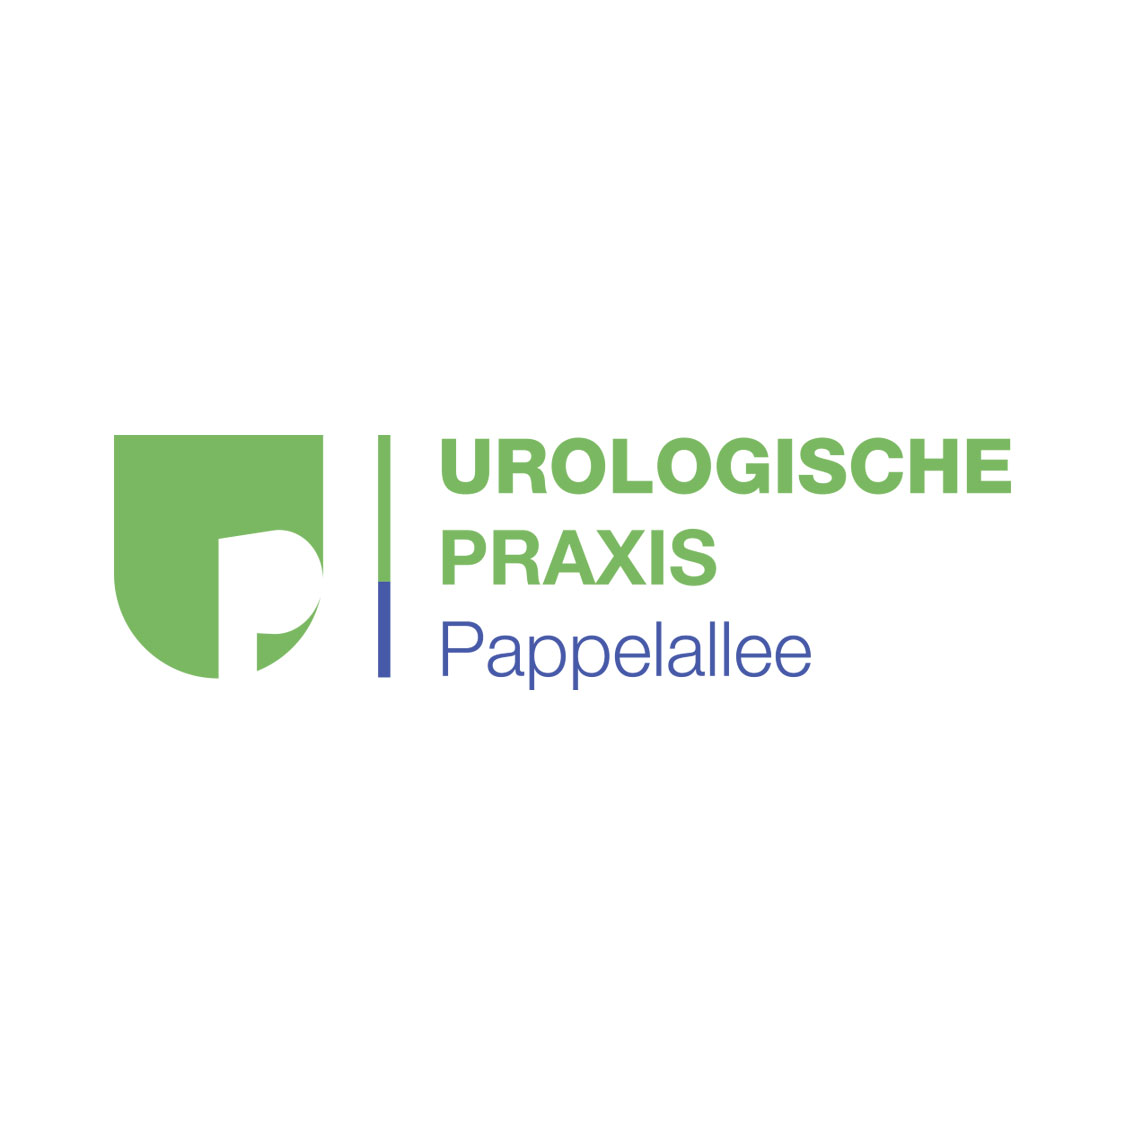 Ansicht des Praxislogos in einer Langvariante für spezielle Anwendungen für die Urologische Praxis Pappelallee ind Greifswald.